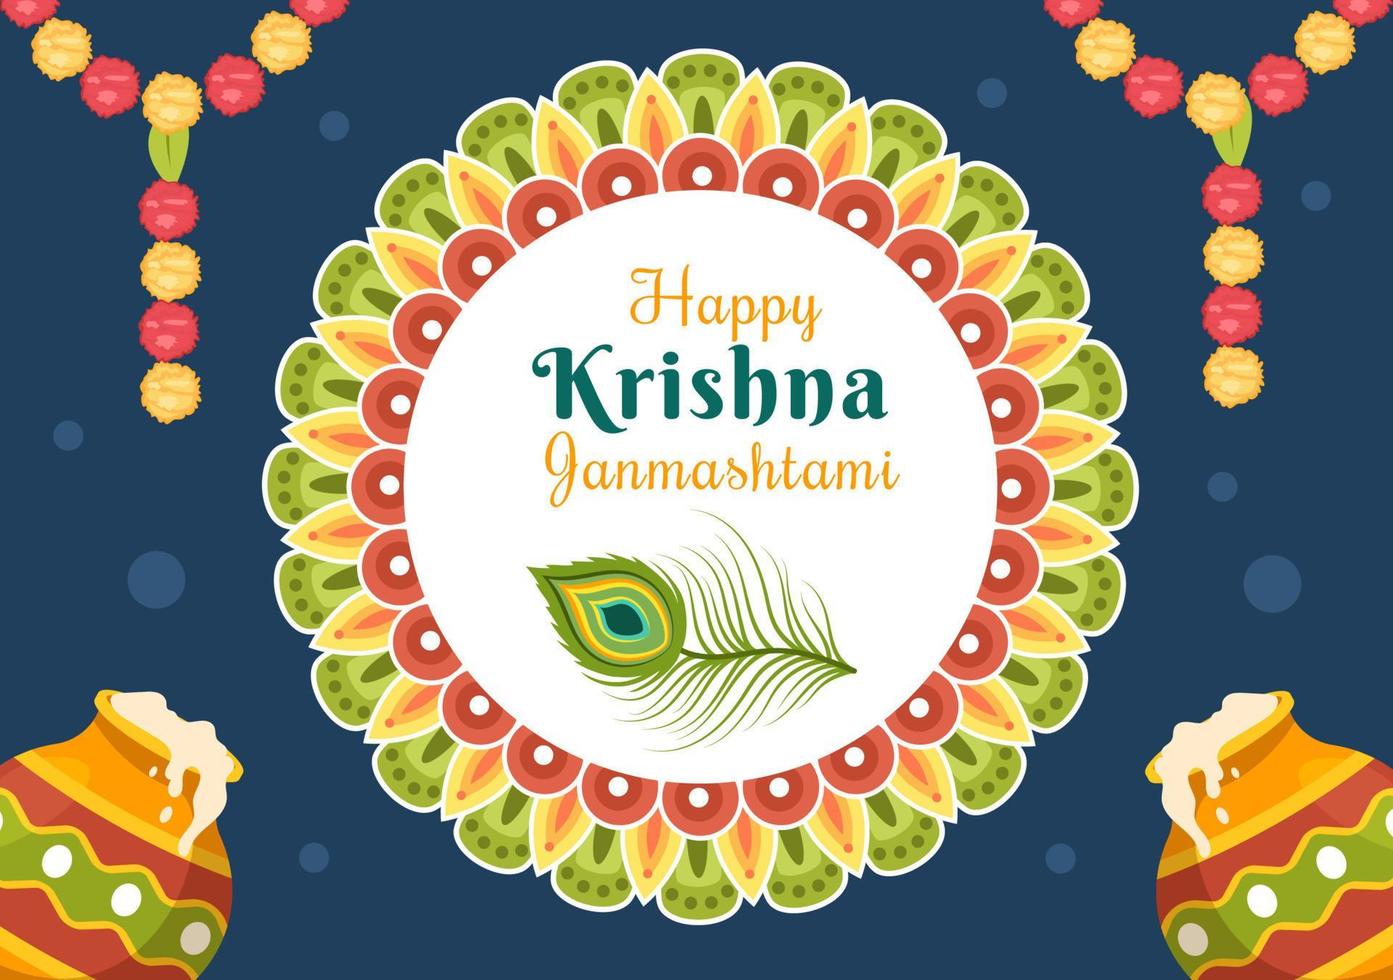 fröhliches krishna janmashtami festival von indien mit bansuri und flöte, dahi handi und pfauenfeder in flacher niedlicher karikaturhintergrundillustration vektor